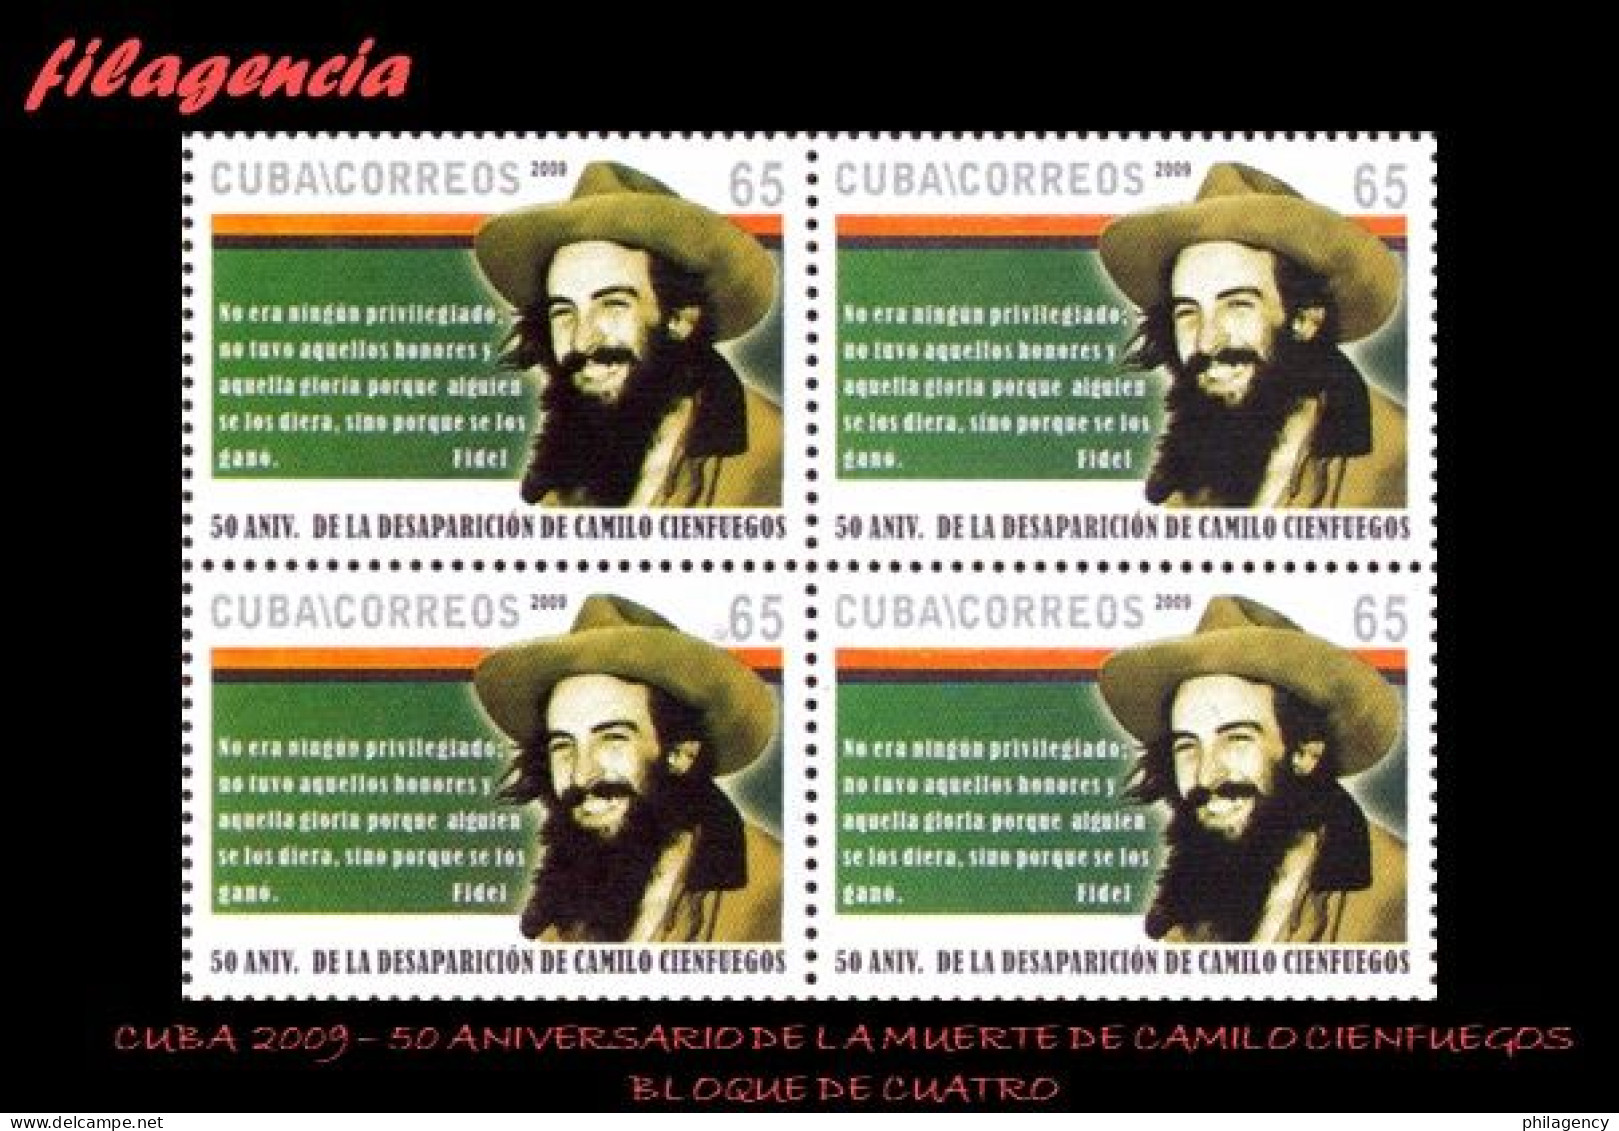 CUBA. BLOQUES DE CUATRO. 2009-35 50 ANIVERSARIO DE LA MUERTE DE CAMILO CIENFUEGOS - Unused Stamps